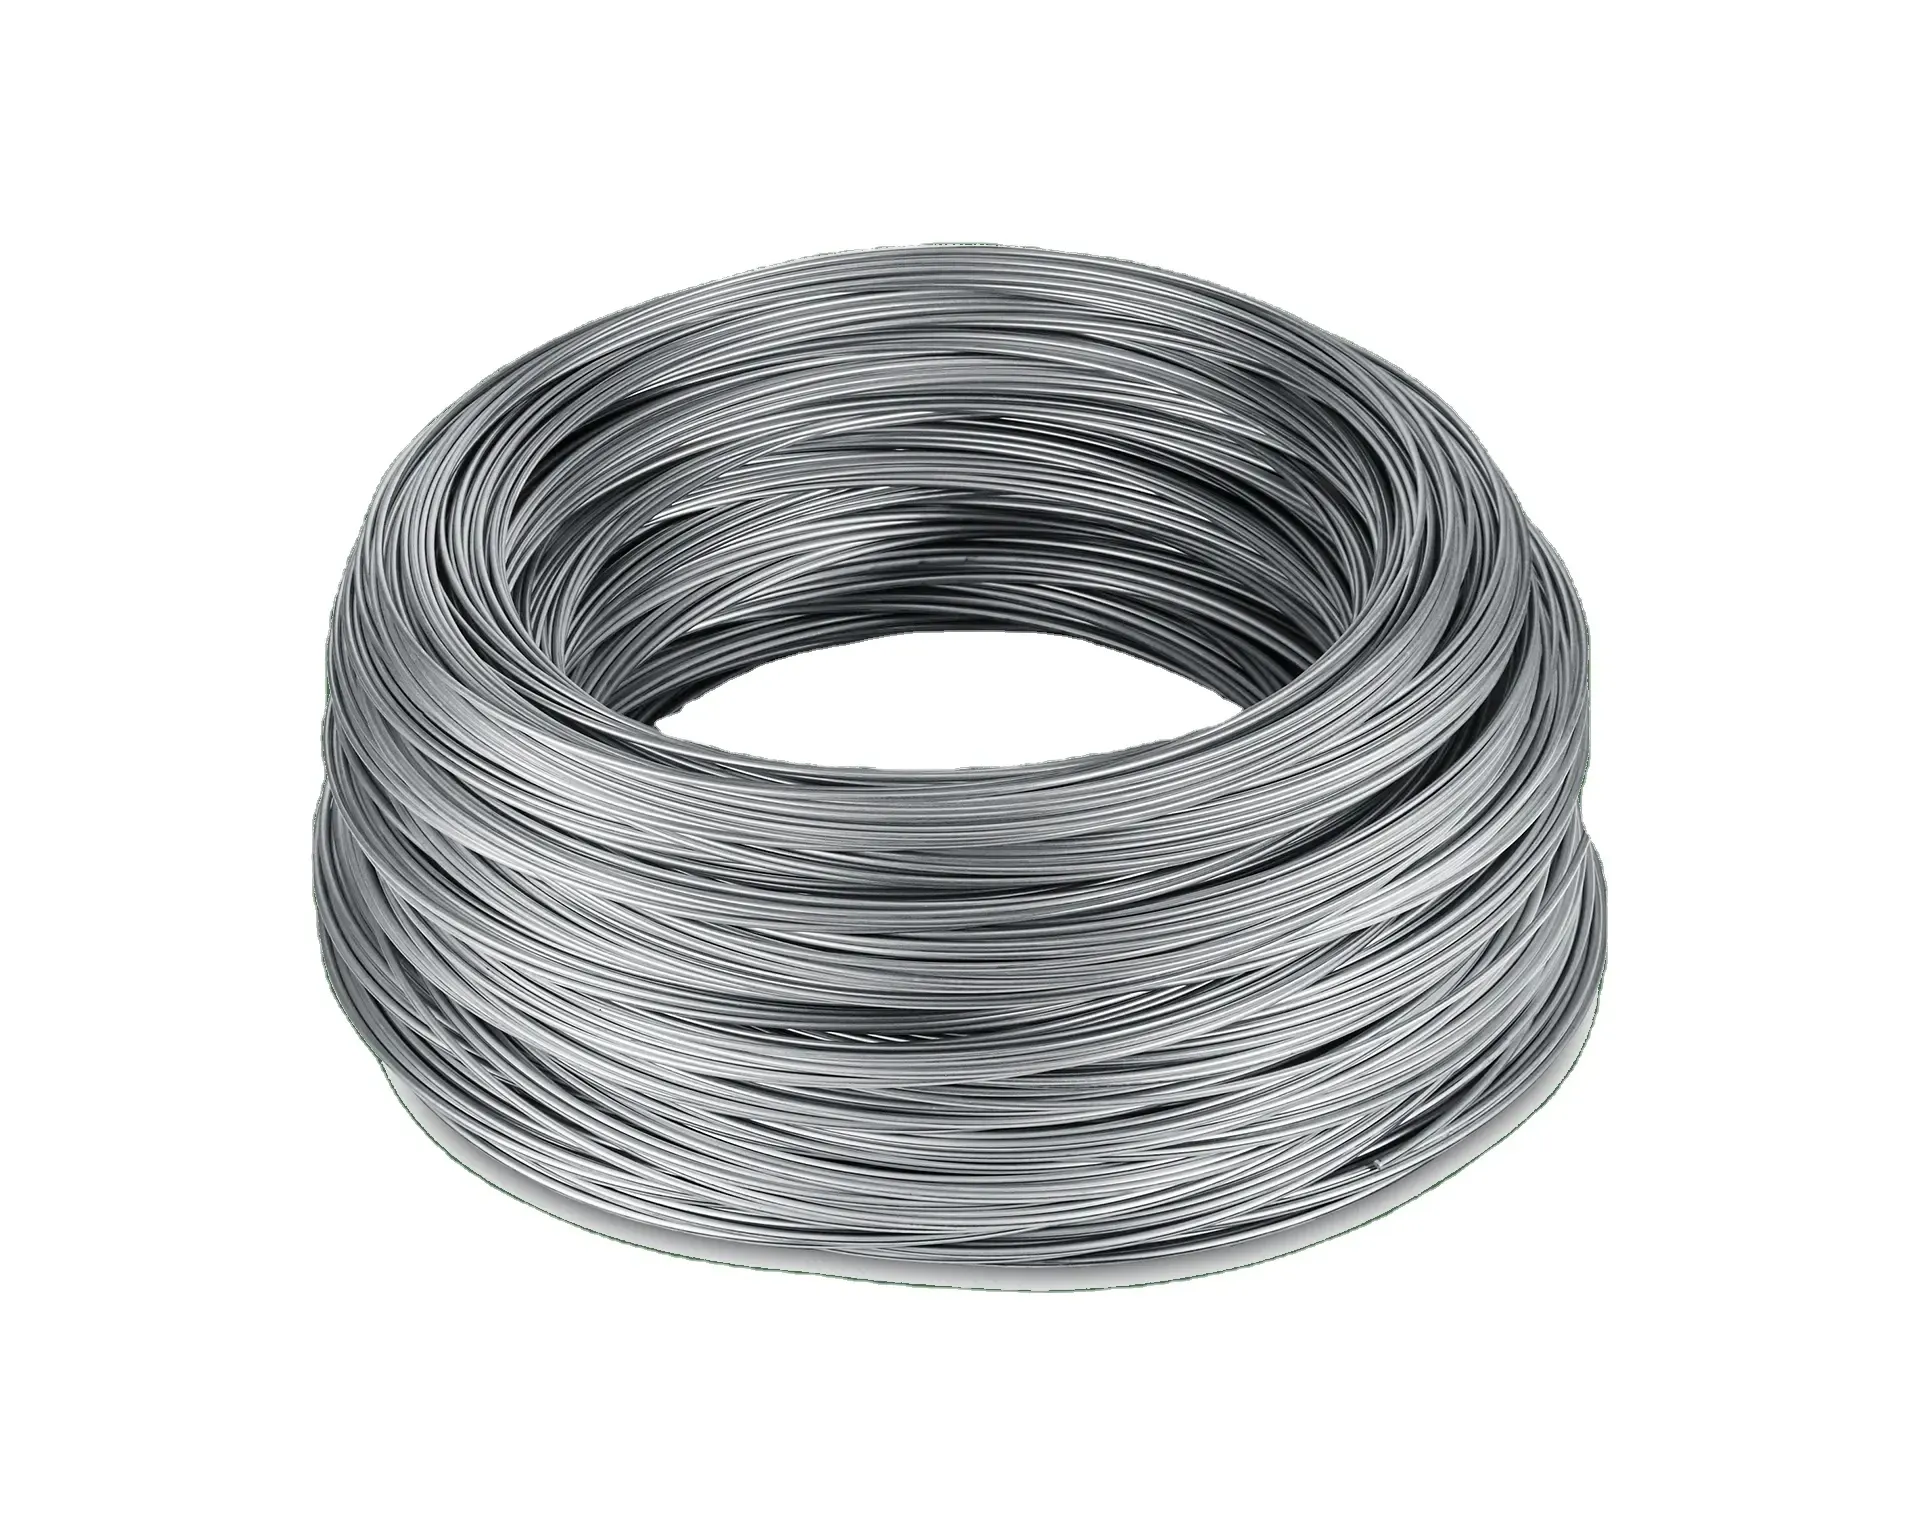 2mm çelik tel çubuk 1006 1008 soğuk çekilmiş düşük swrh62a yüksek karbonlu demir düz çelik tel çubuk 10800 72b